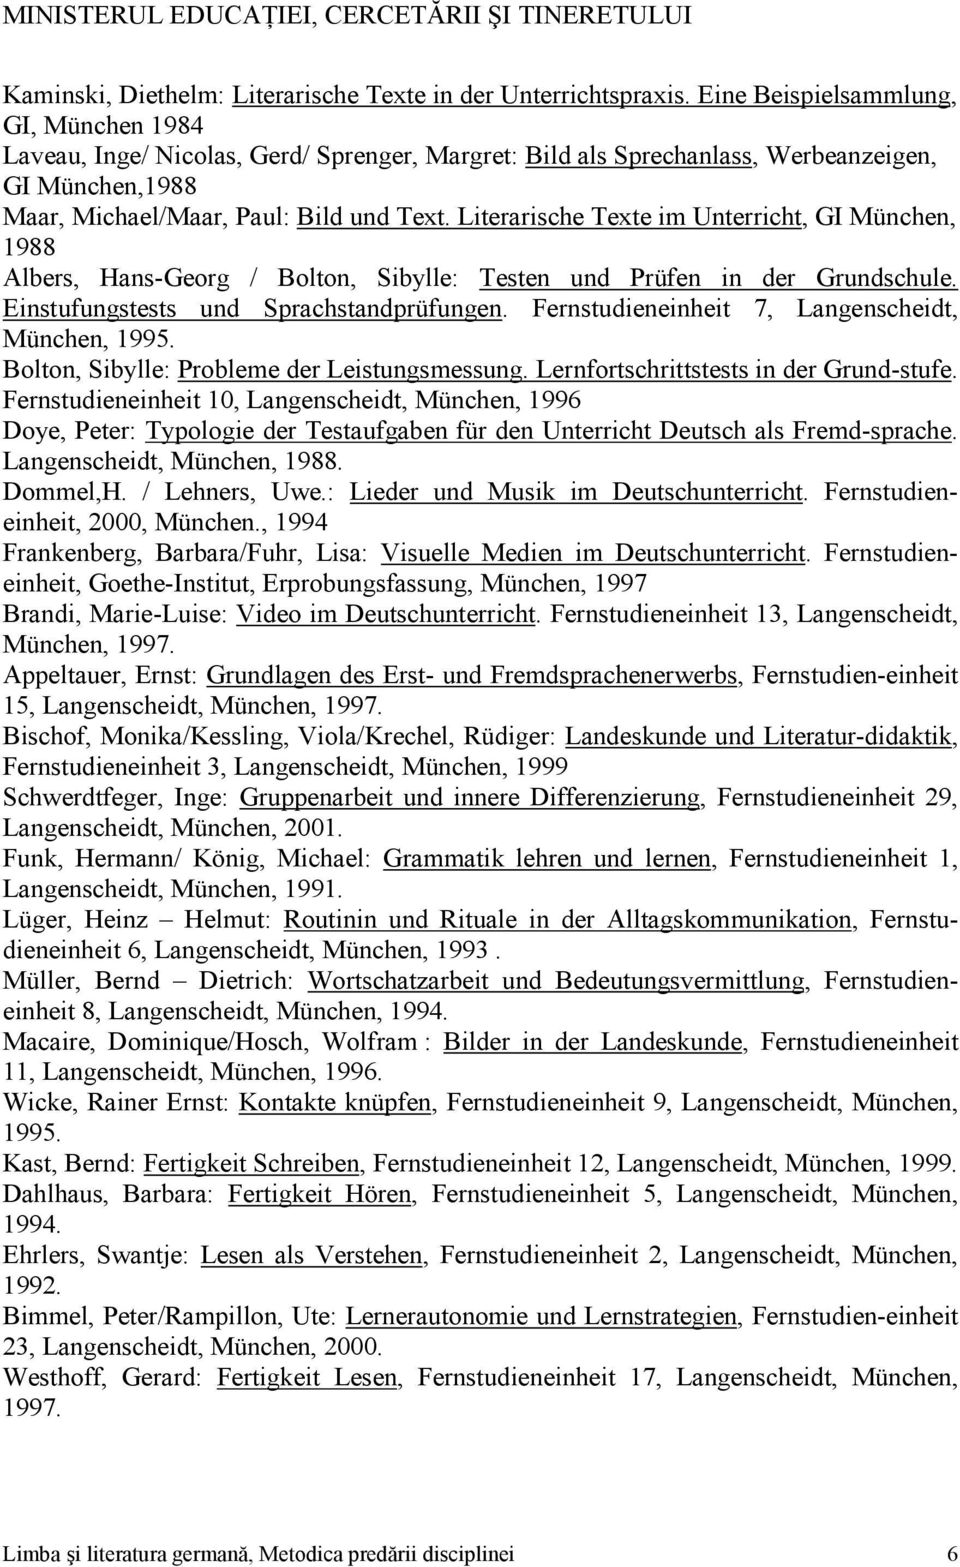 Literarische Texte im Unterricht, GI München, 1988 Albers, Hans-Georg / Bolton, Sibylle: Testen und Prüfen in der Grundschule. Einstufungstests und Sprachstandprüfungen.